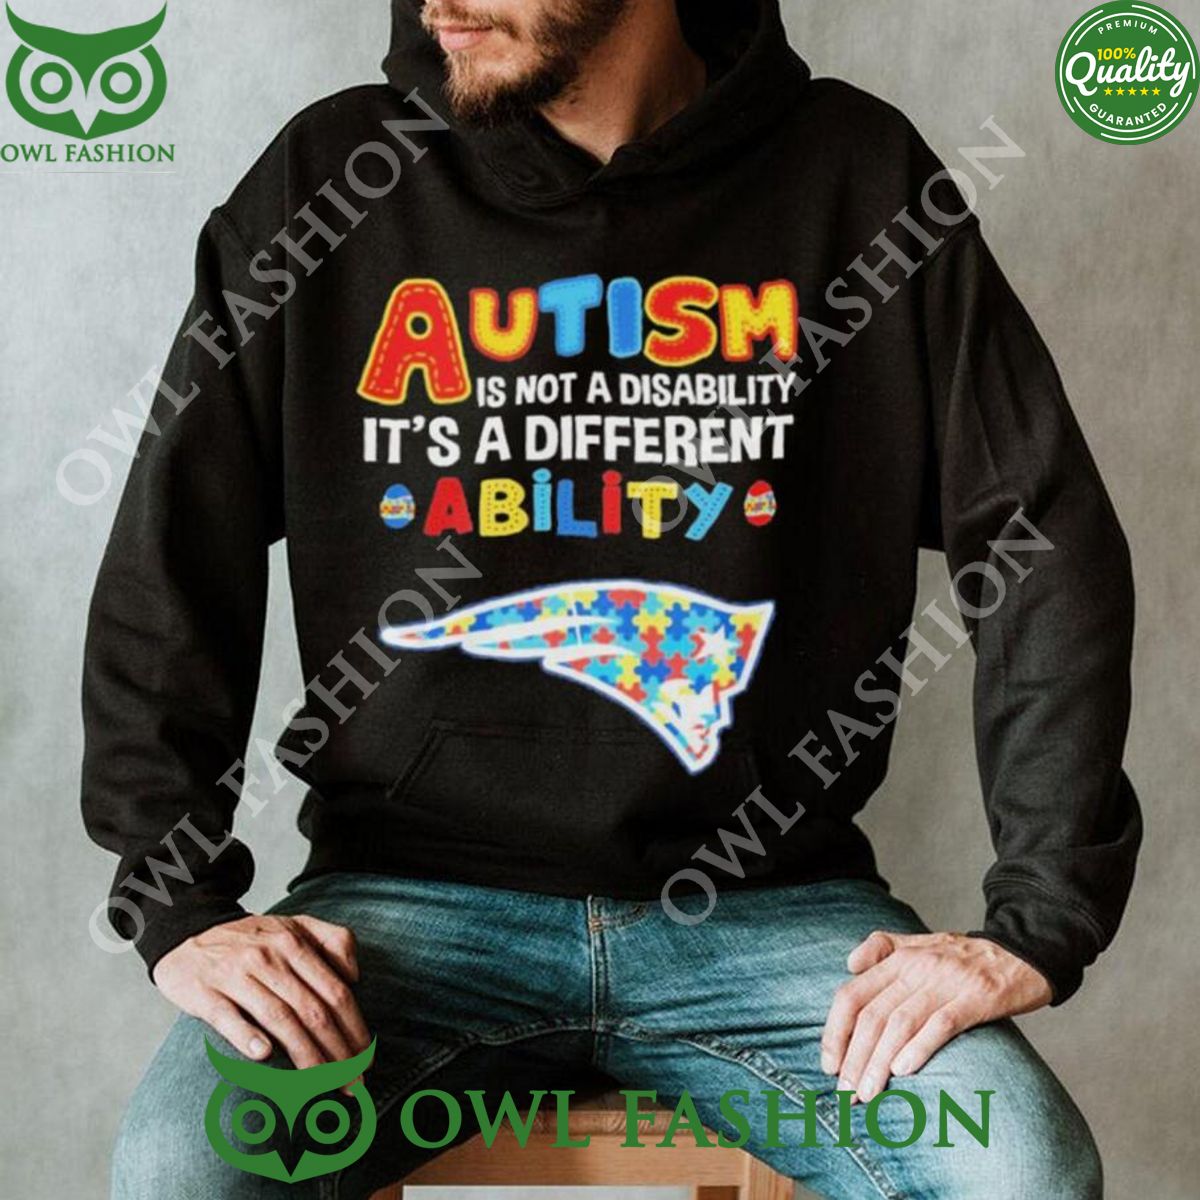 new england patriots autism premium nfl 2d hoodie shirt 1 rBCqb.jpg